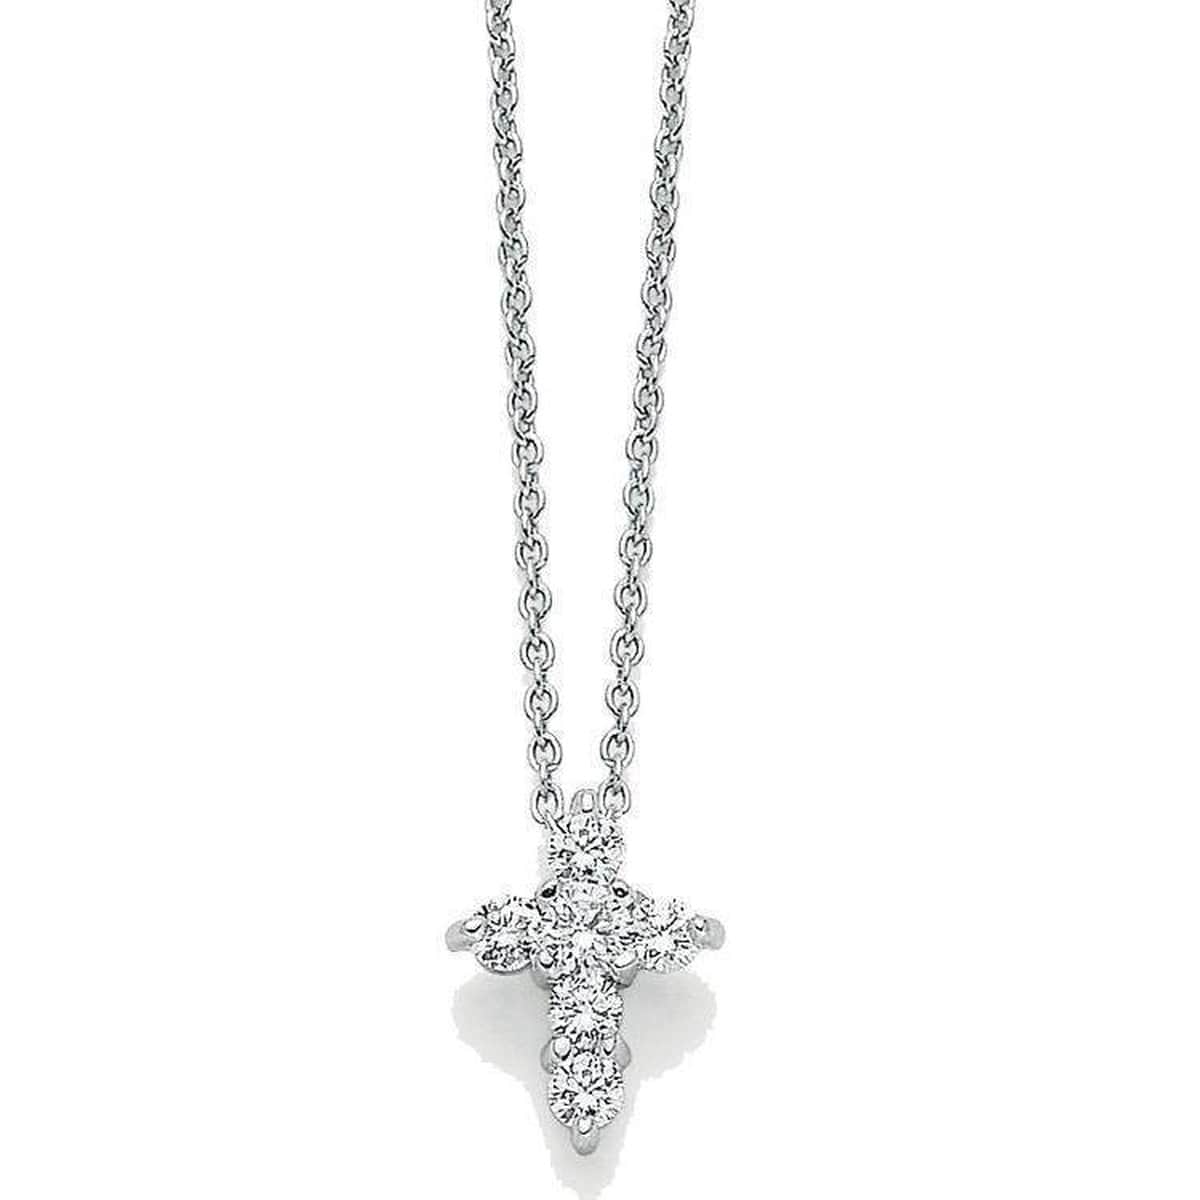 18k White Gold & Diamond Cross Necklace - 001857AWCHX1 - Roberto Coin